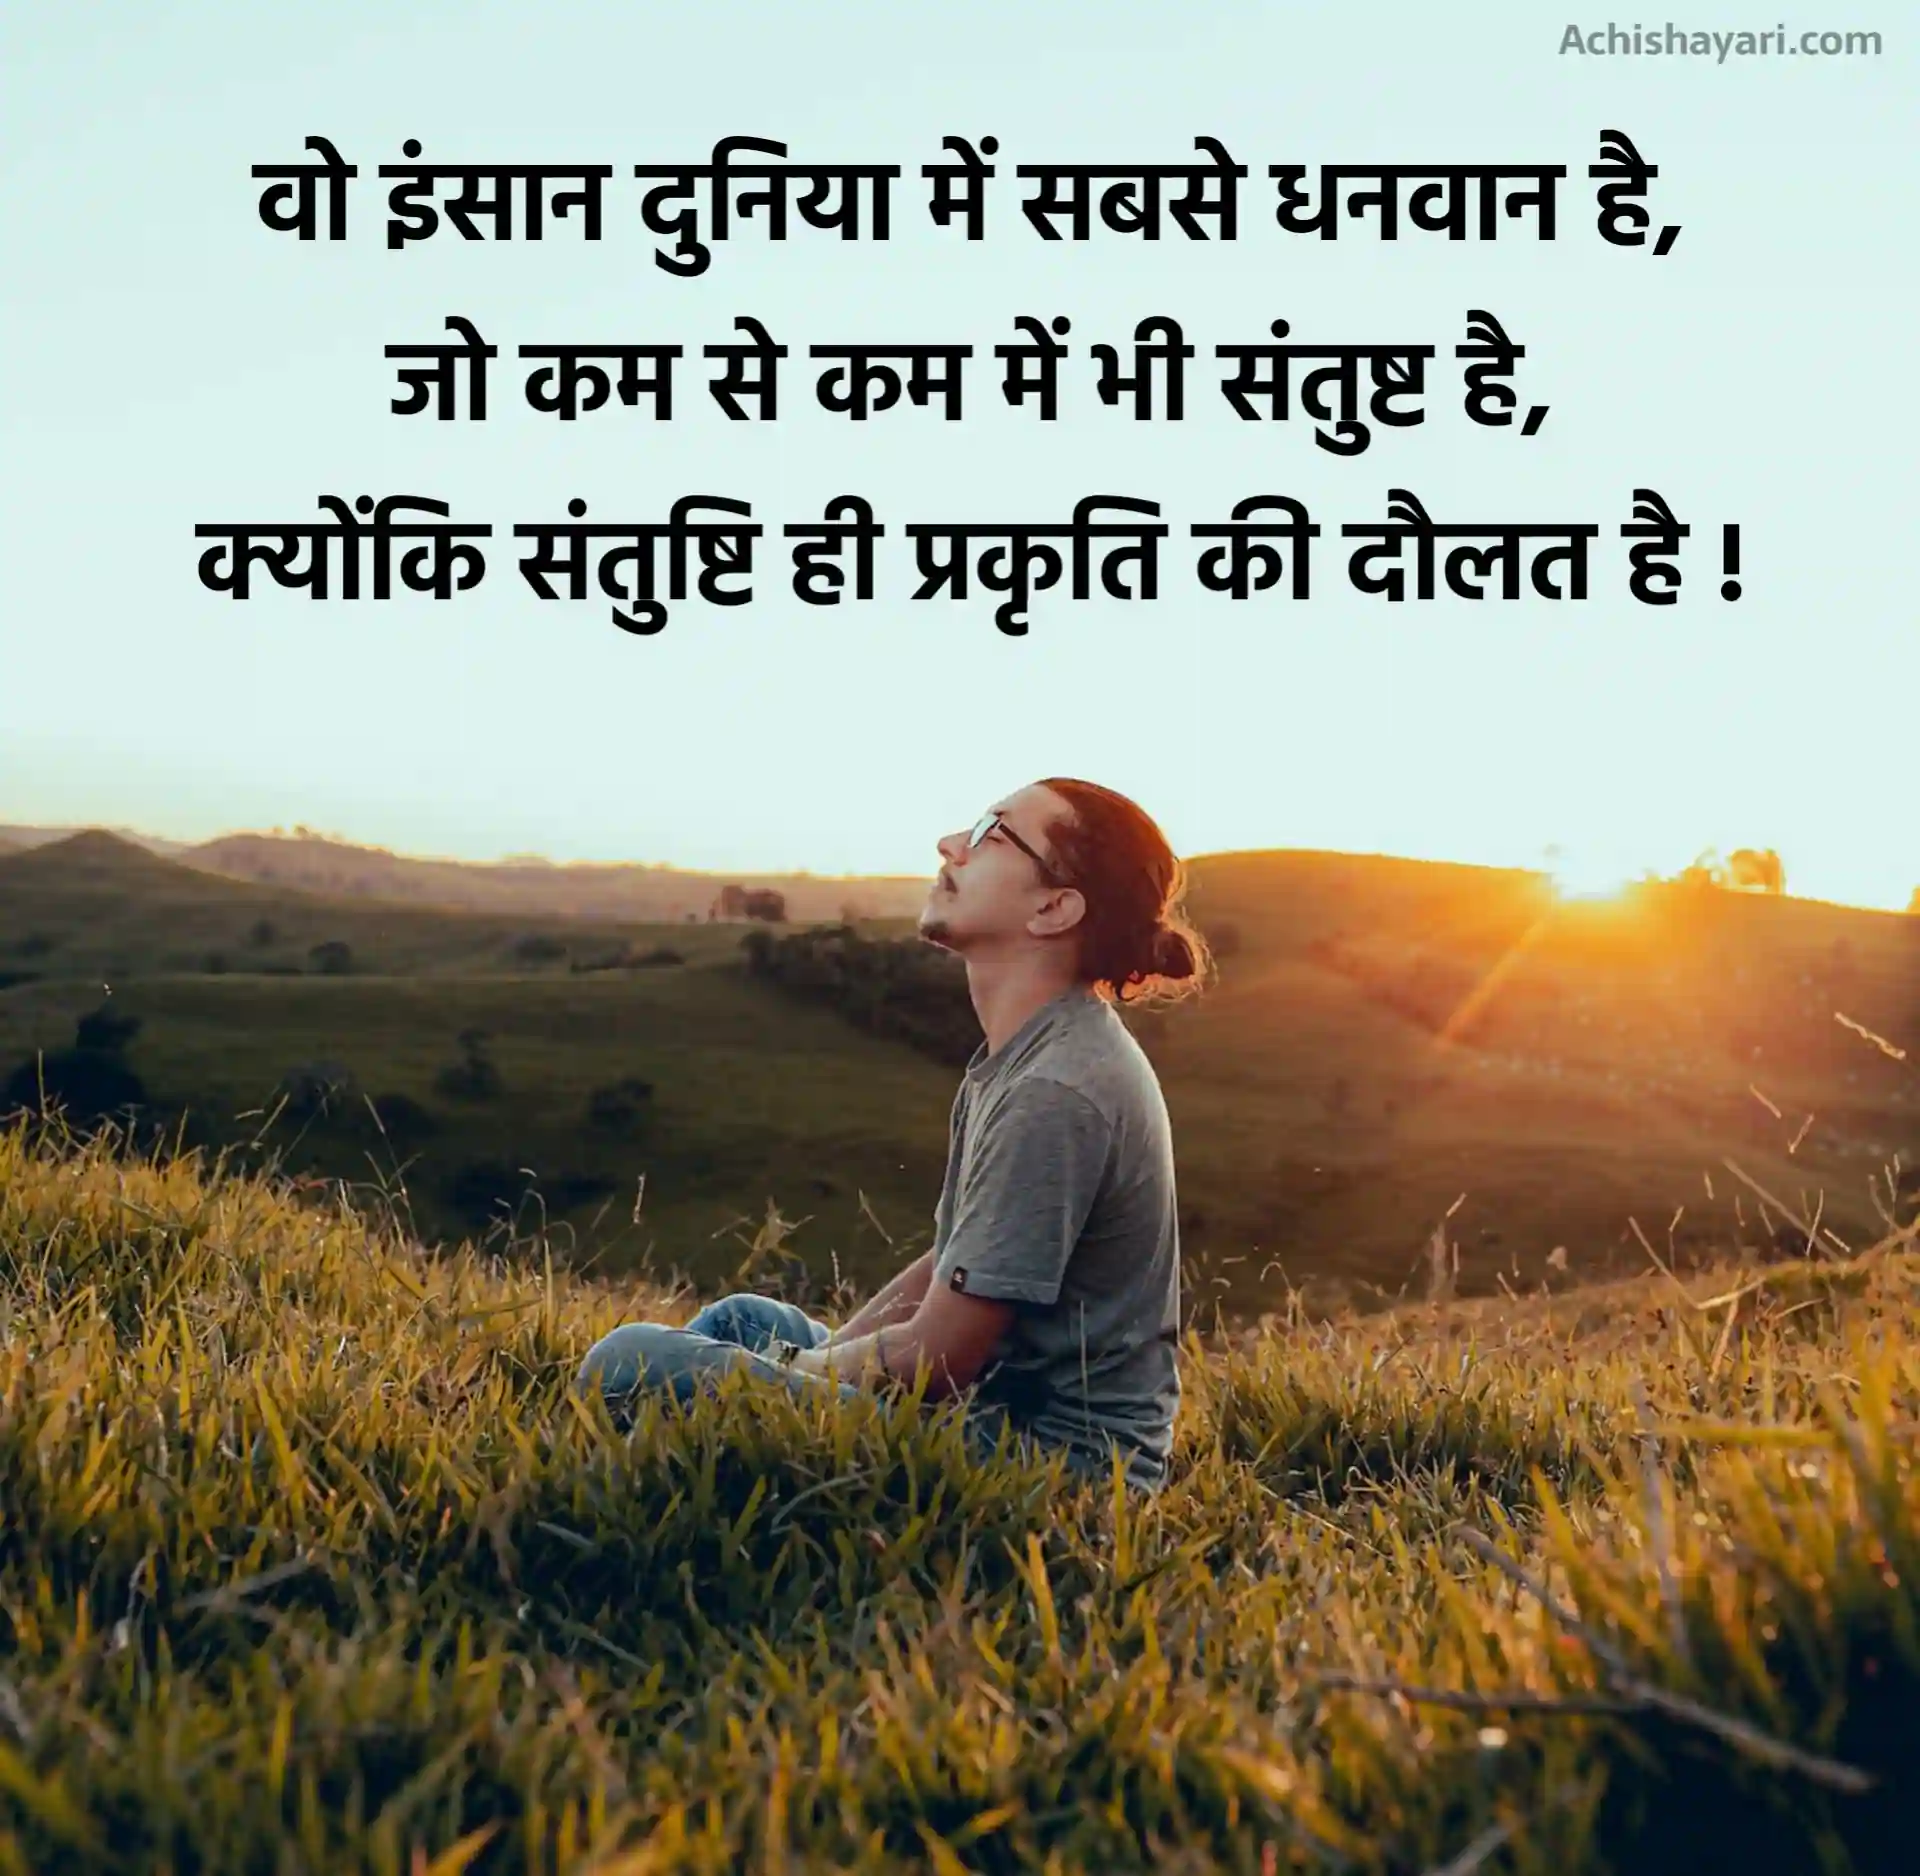 Nature Quotes Hindi